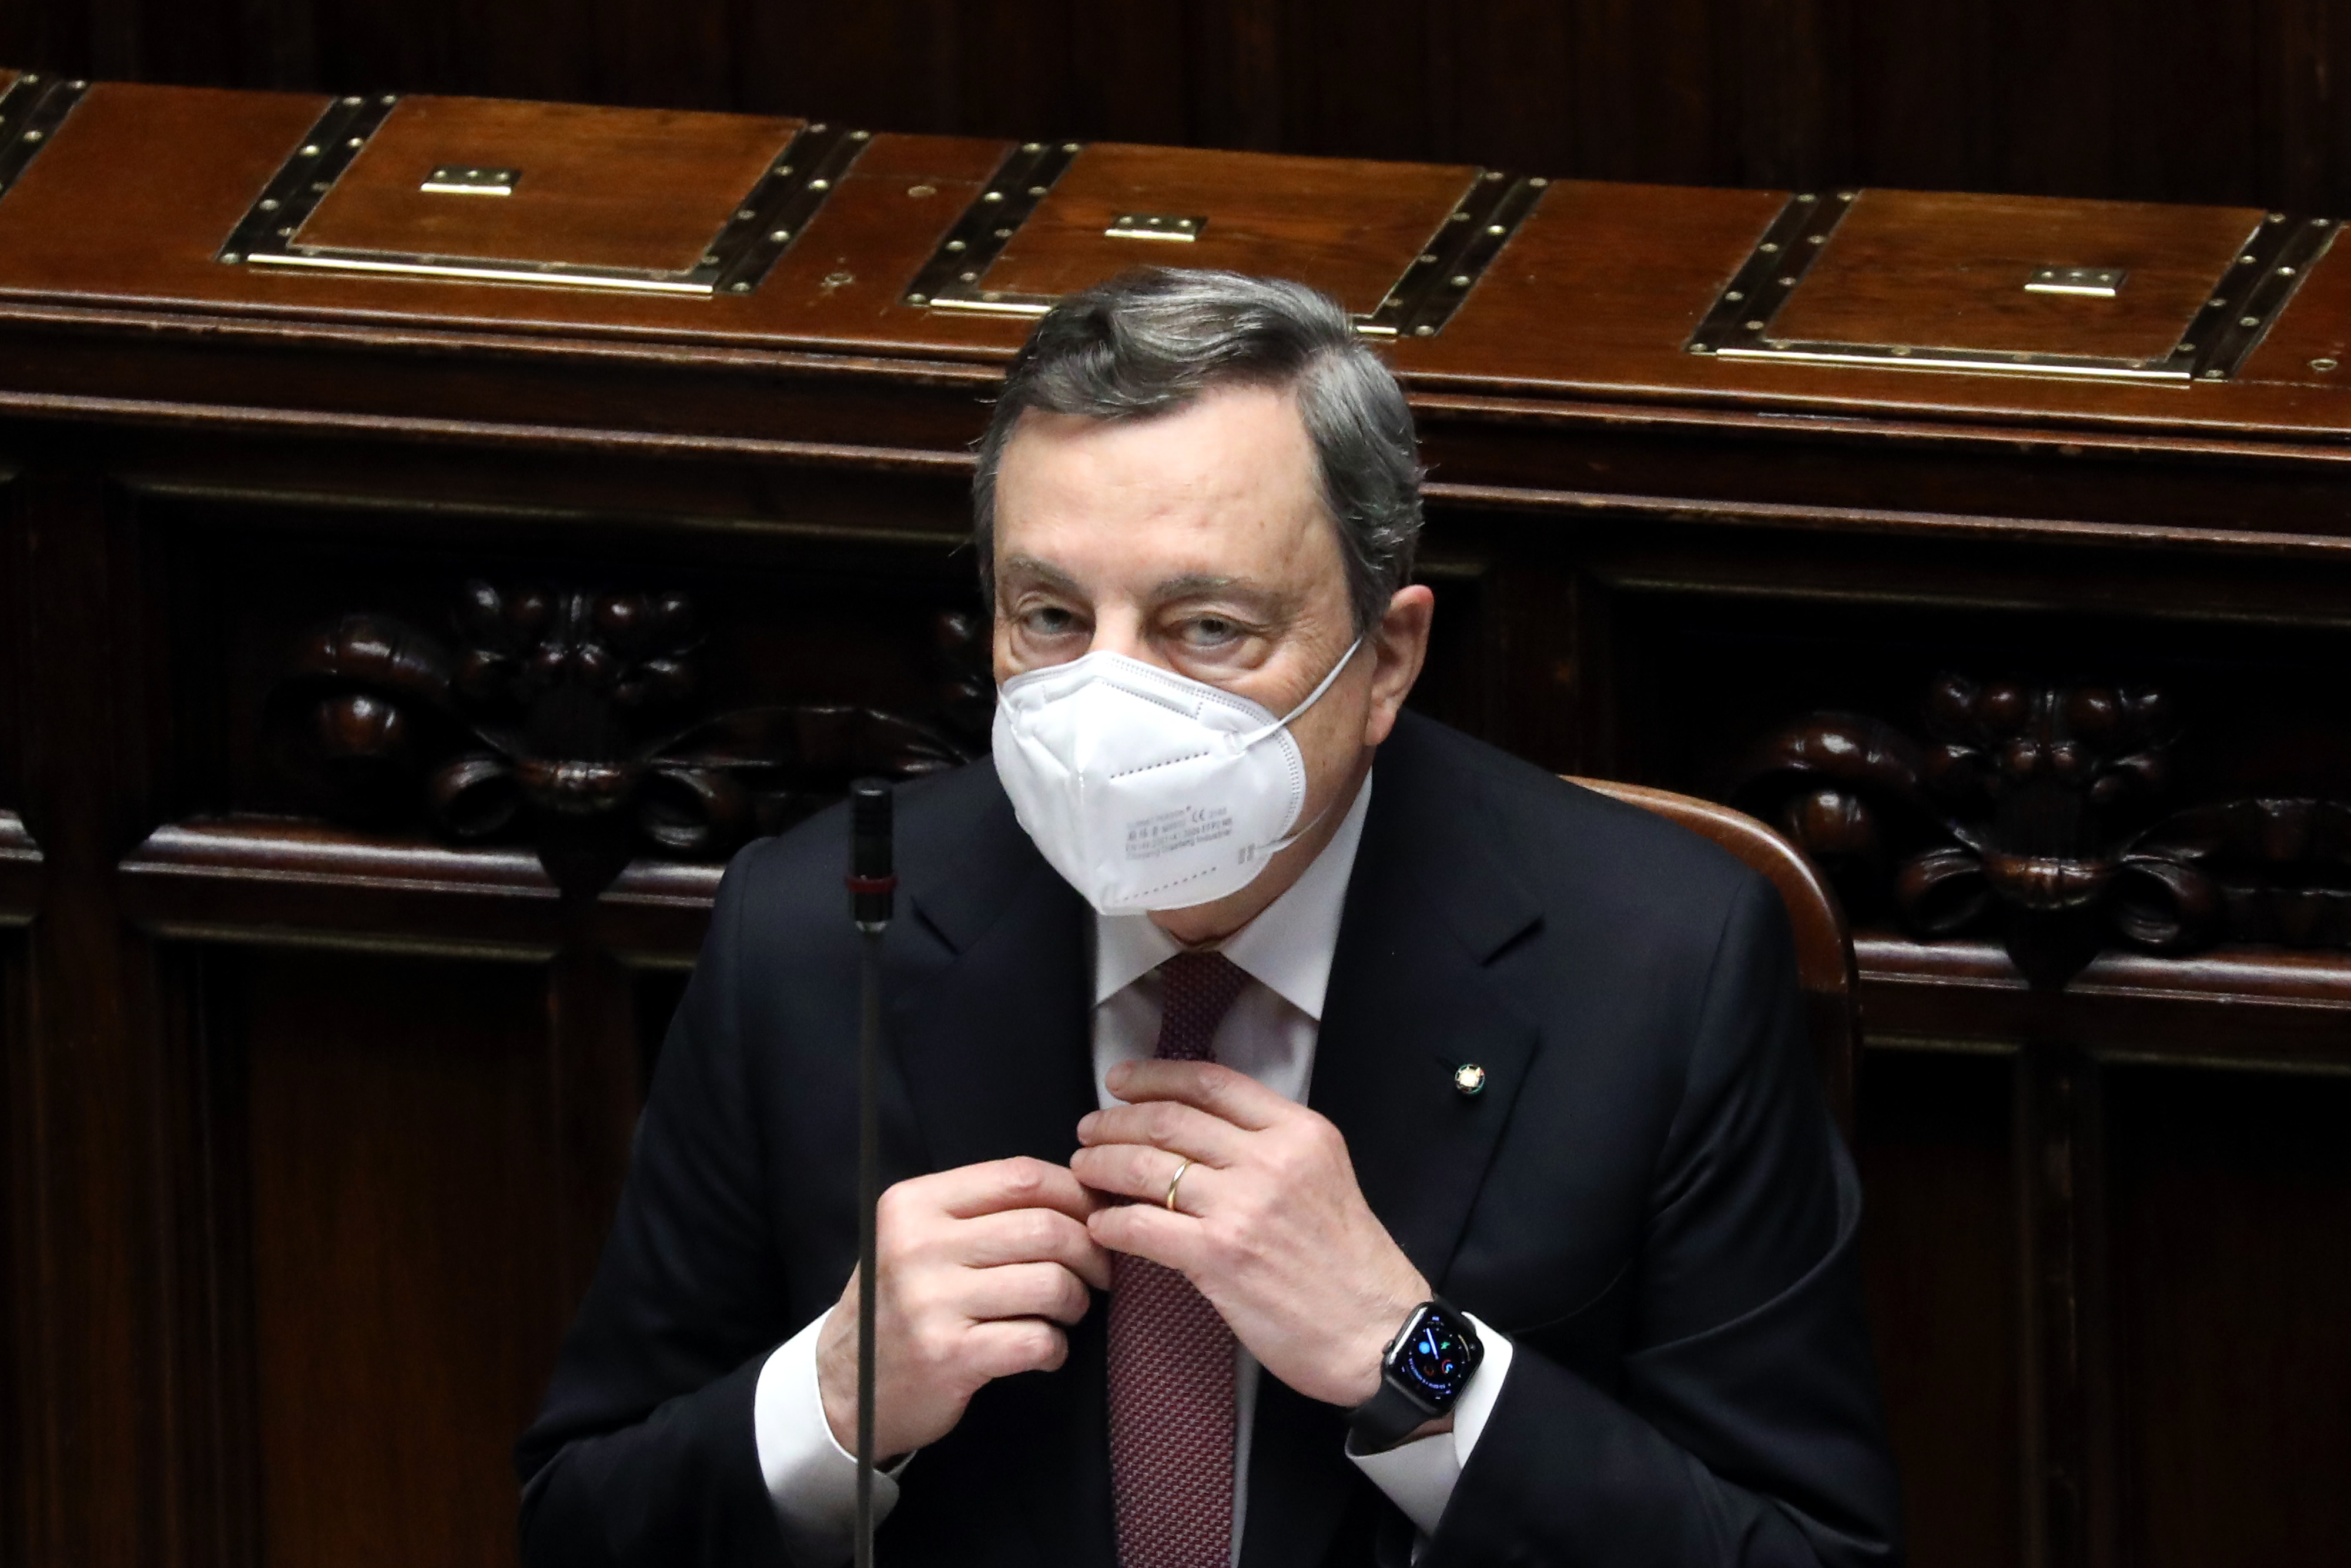 Il primo ministro italiano Mario Draghi ha affermato che l’Unione europea dovrebbe allentare le regole fiscali per consentire maggiori stimoli